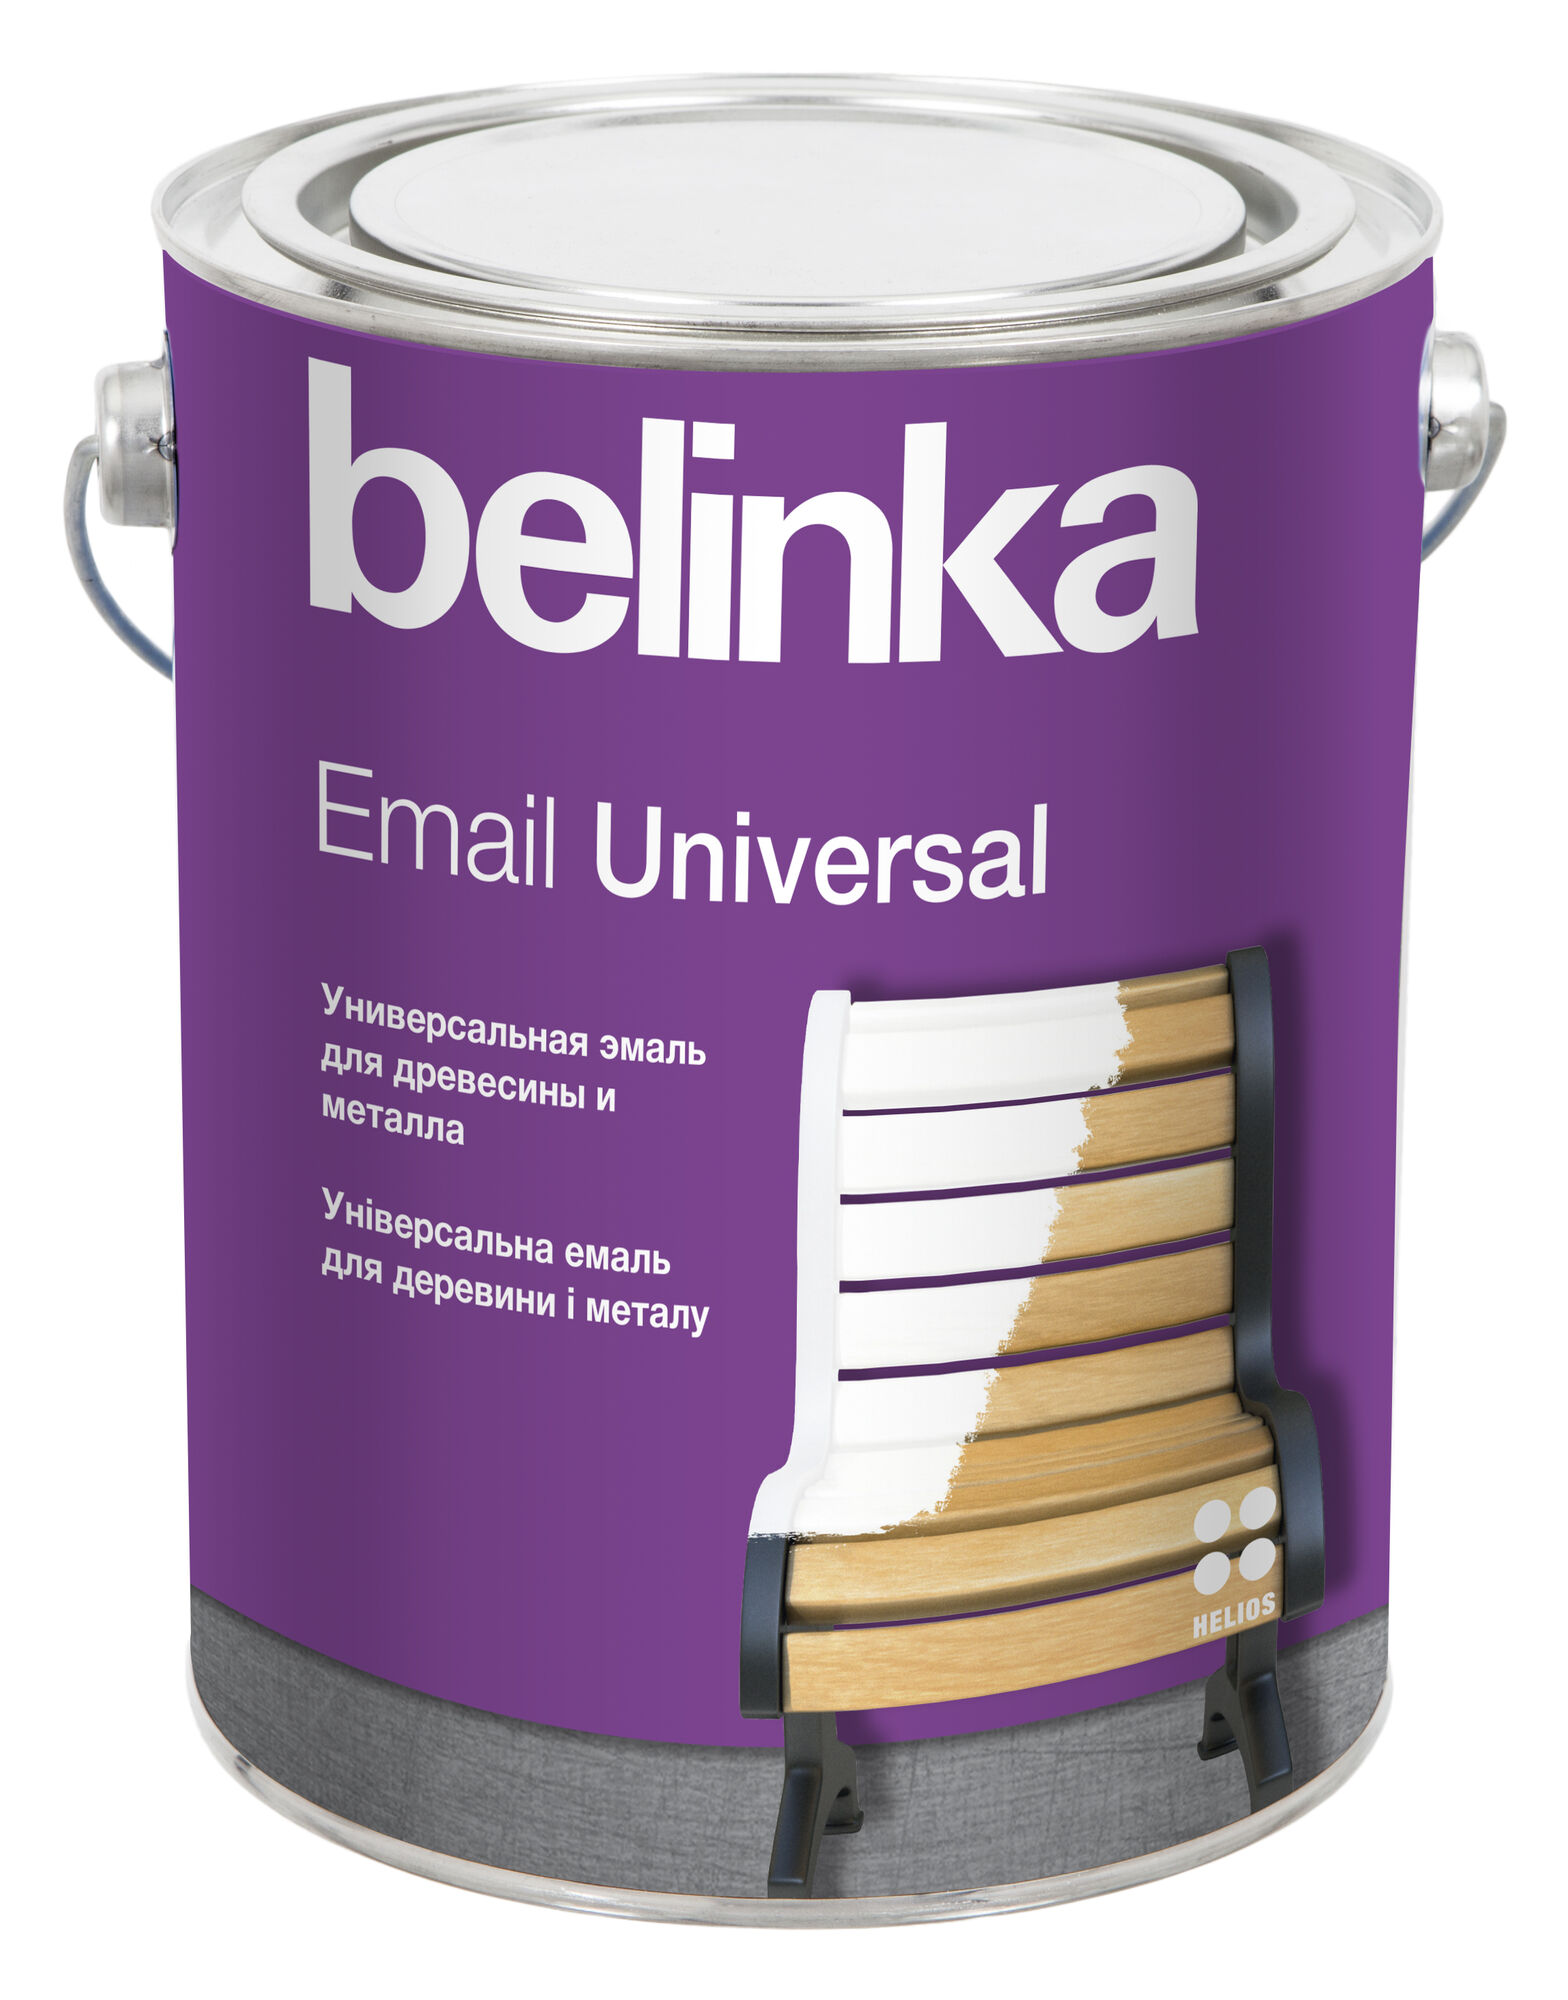 Эмаль универсальная Email Universal Belinka B1 Белая 2,7 л Глянцевая